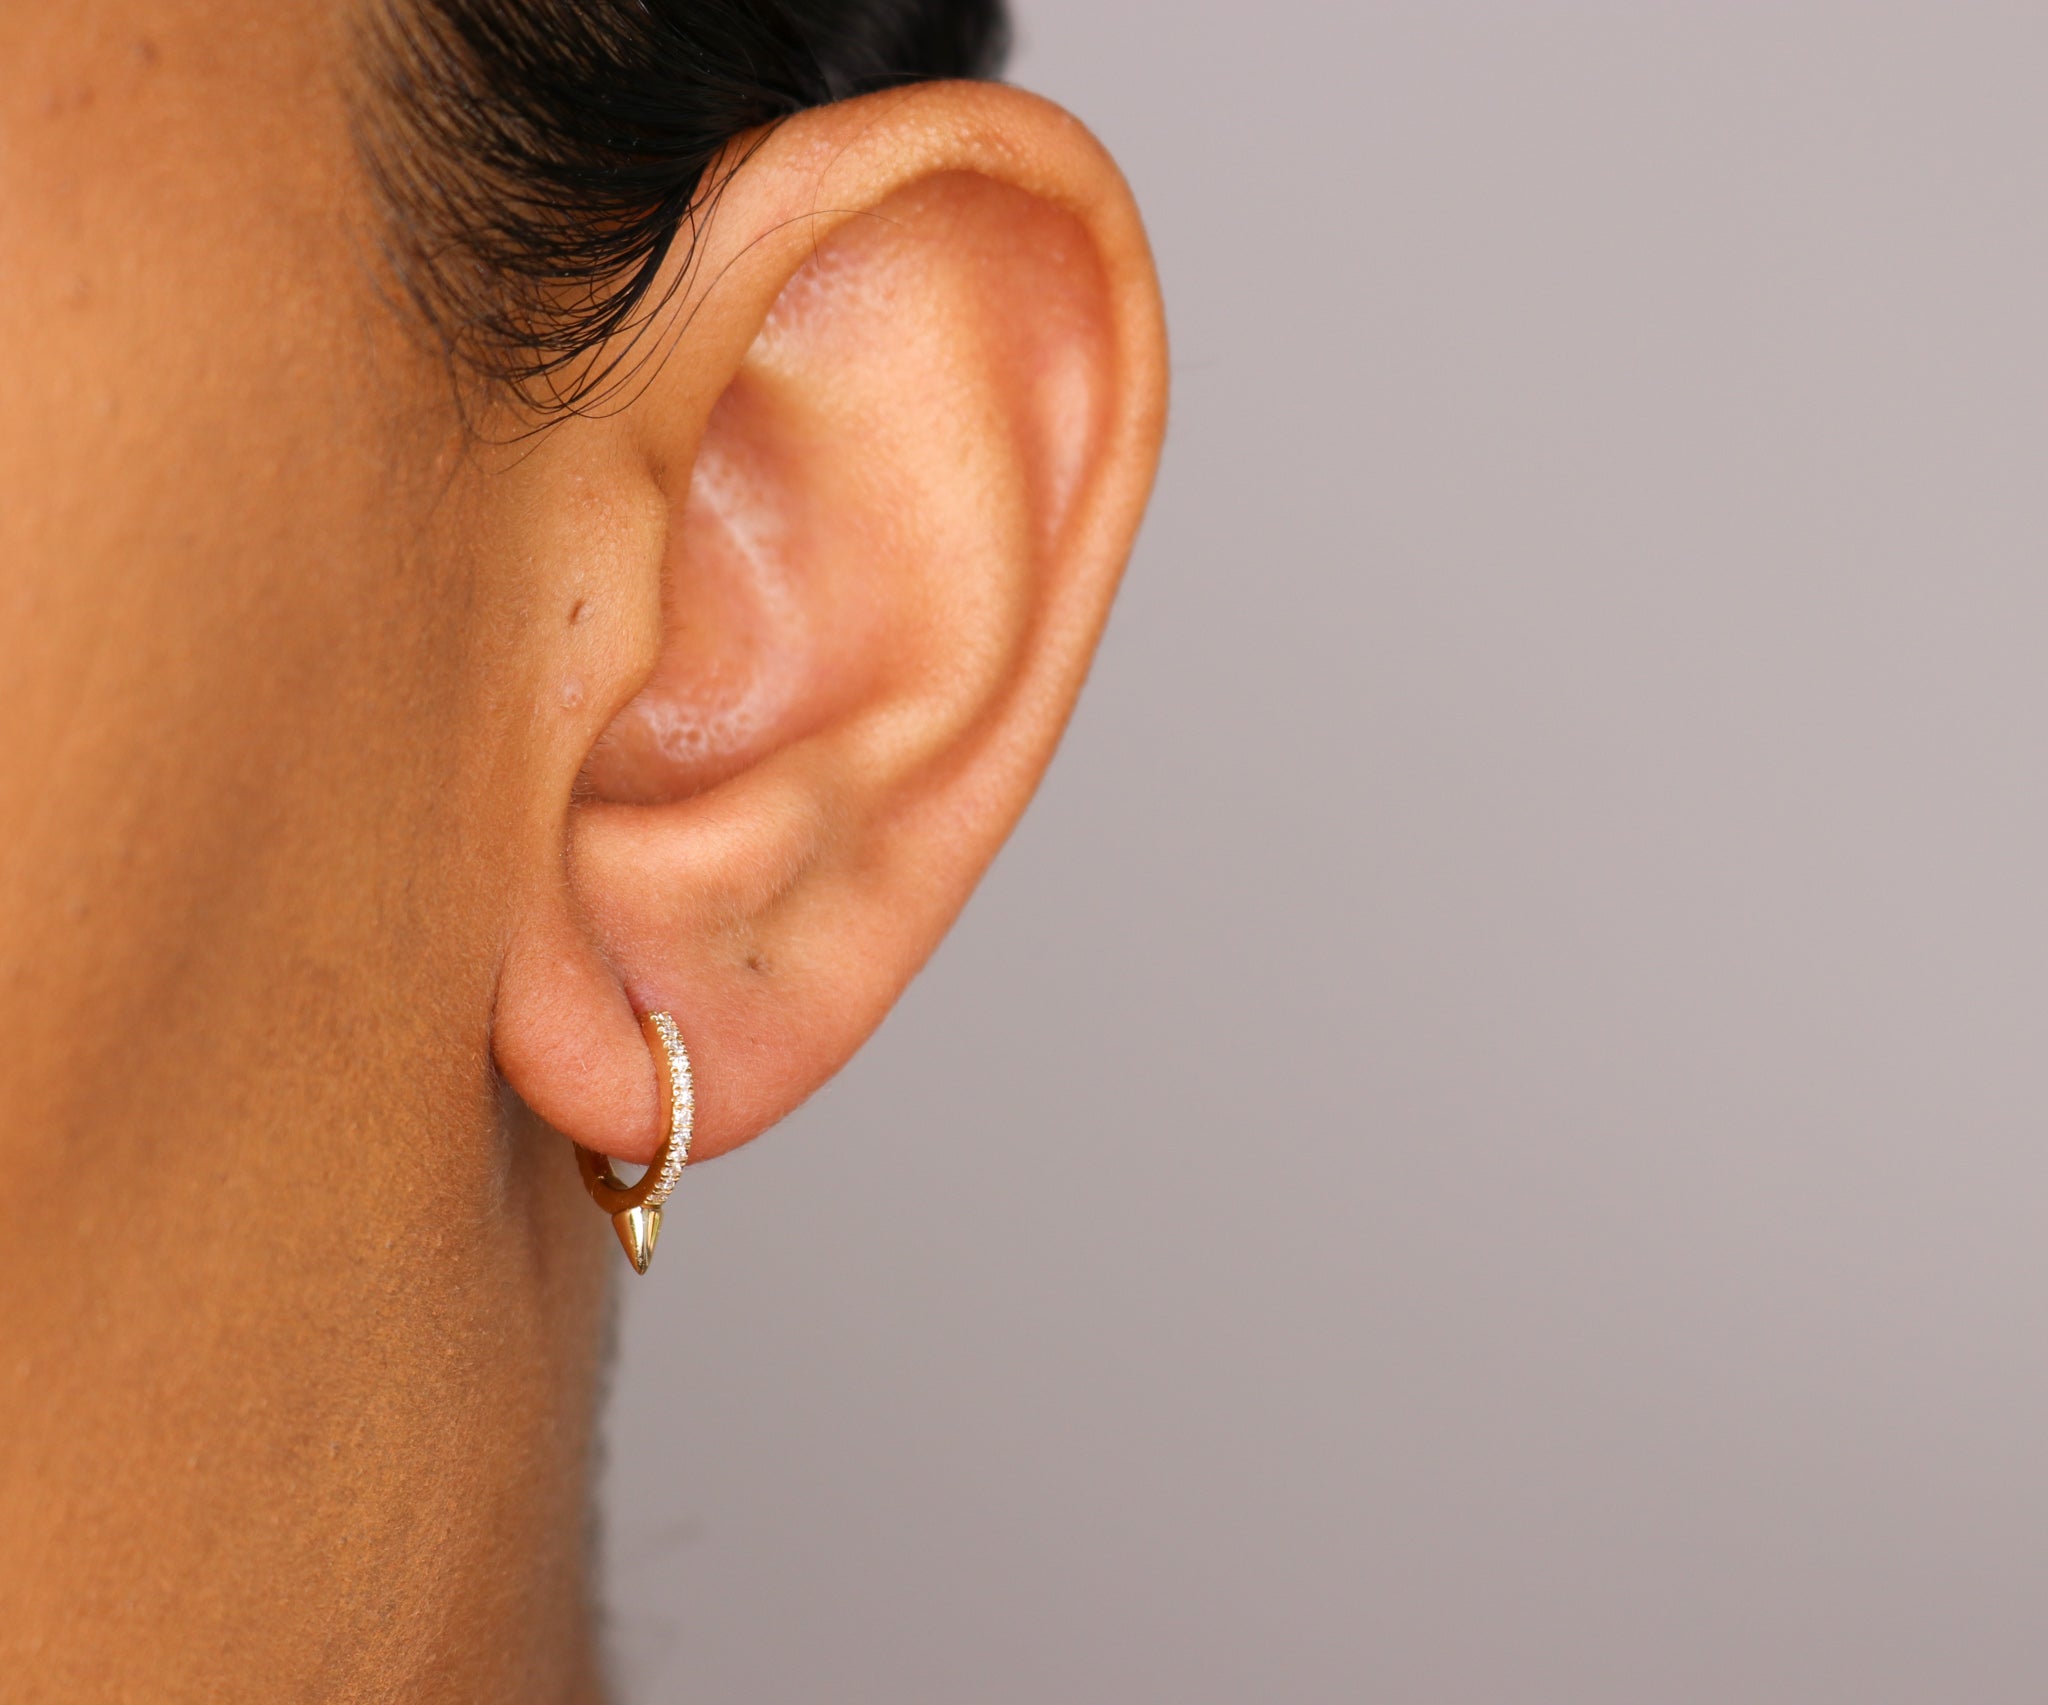 14K Diamond Spike Hoop Earrings - Nolita